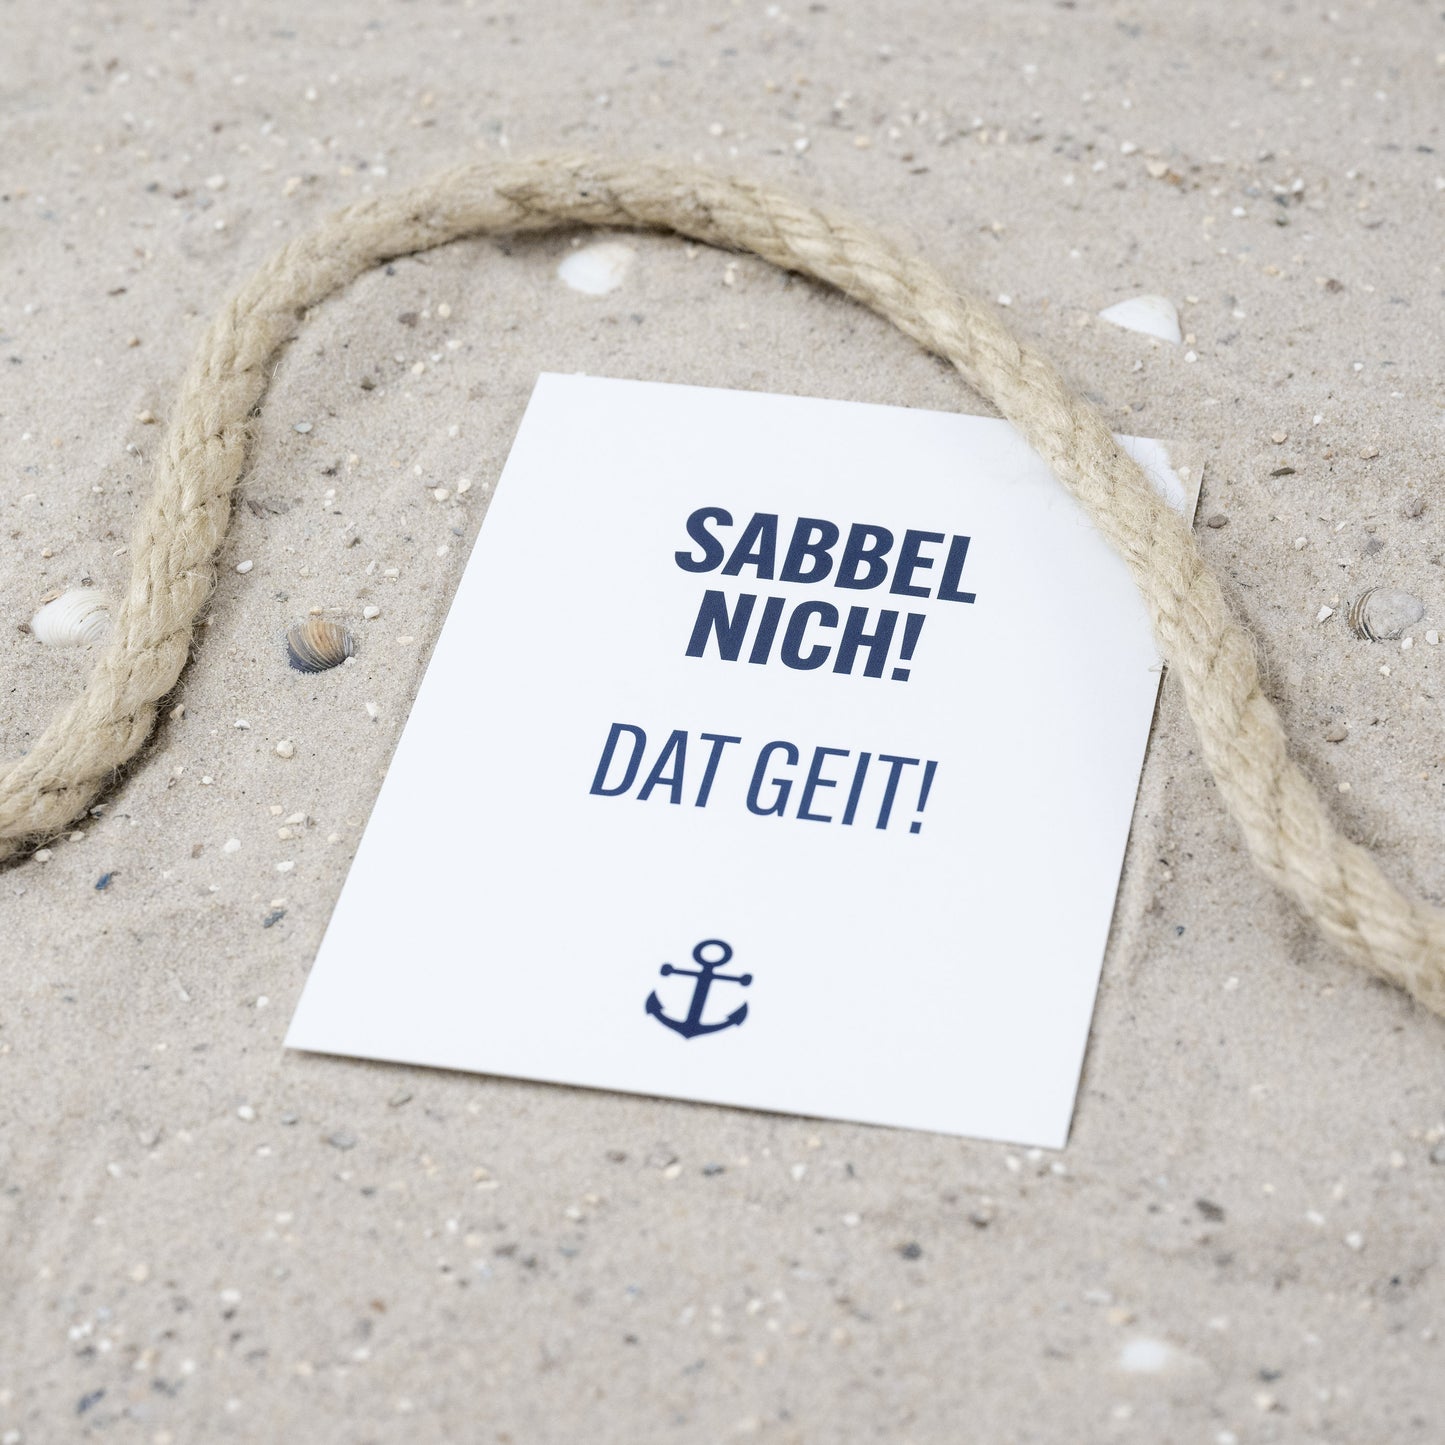 Postkarte • Ansichtskarte • norddeutsche Grußkarte • maritim "Sabbel nich" - DIN A6